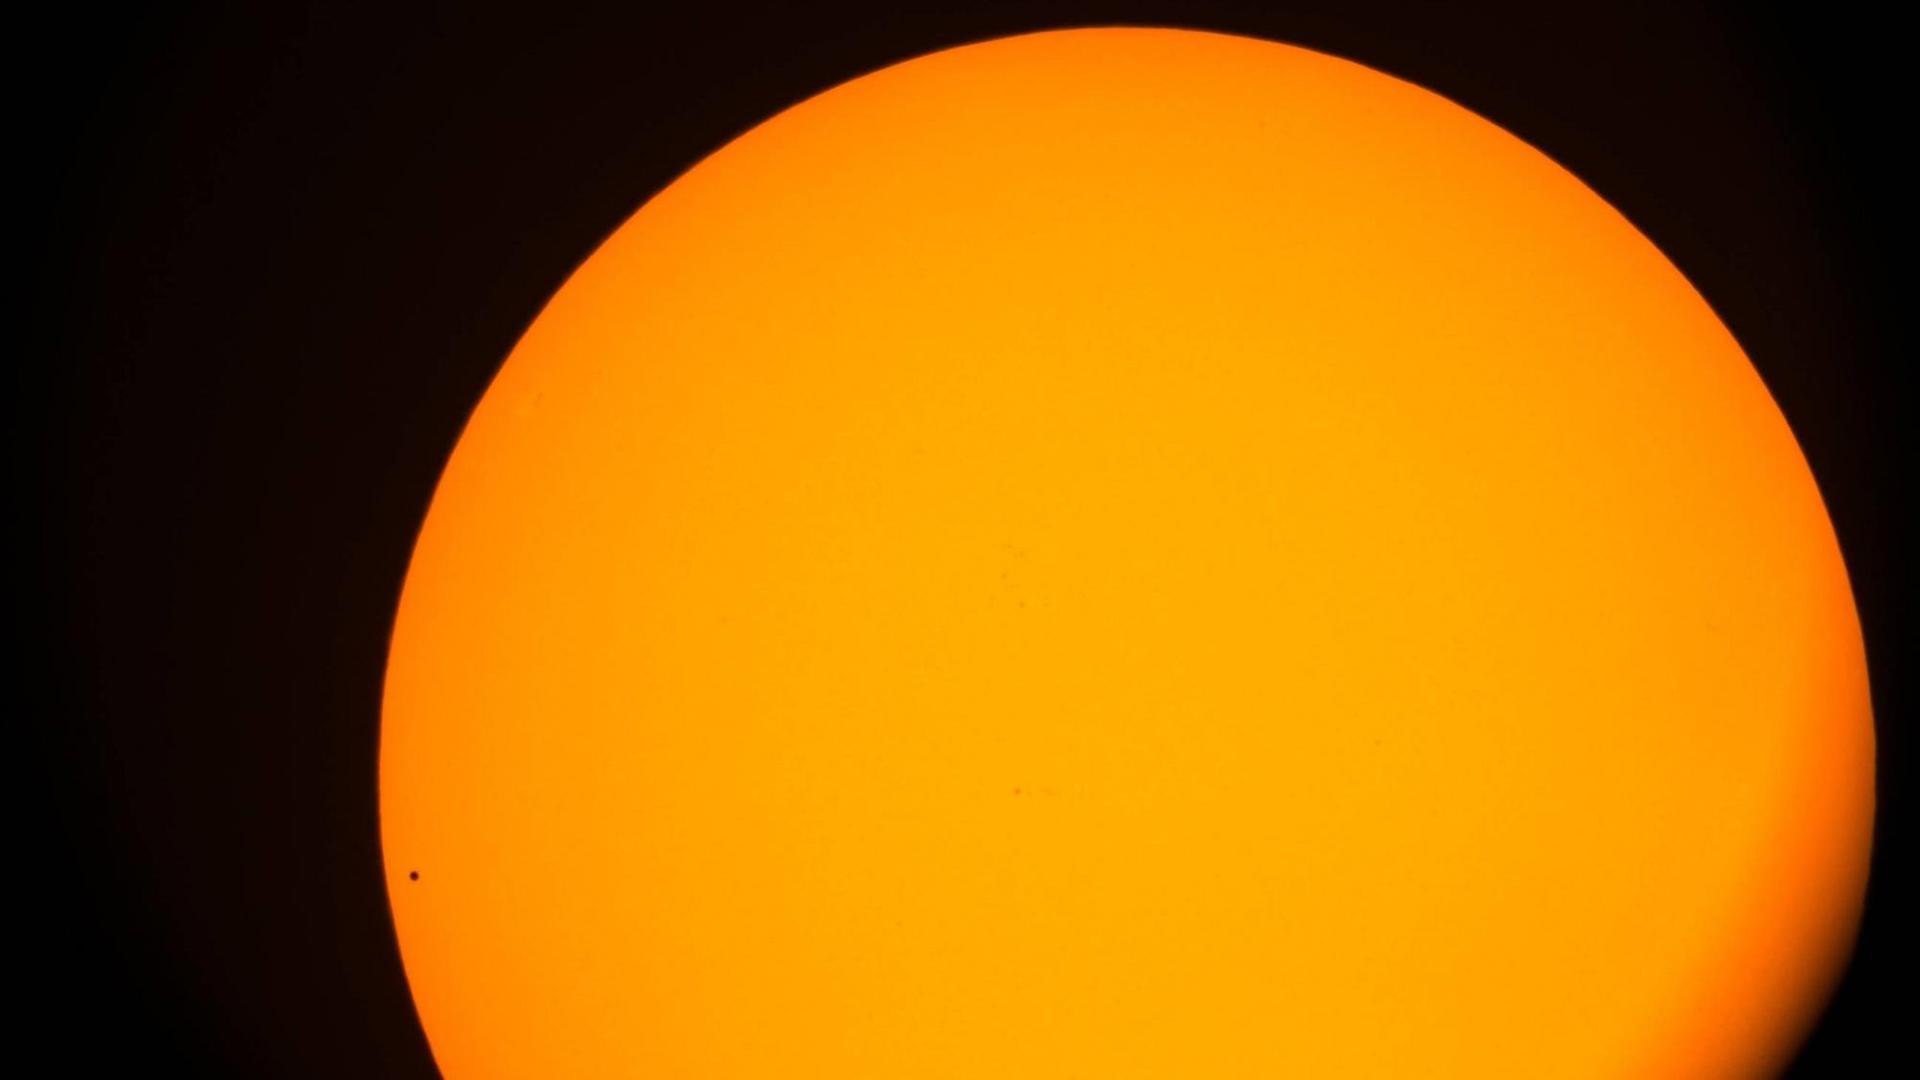 Vor der Sonne in glühendem gelb/organge ist der Merkur nur als kleiner schwarzer Punkt zu erkennen